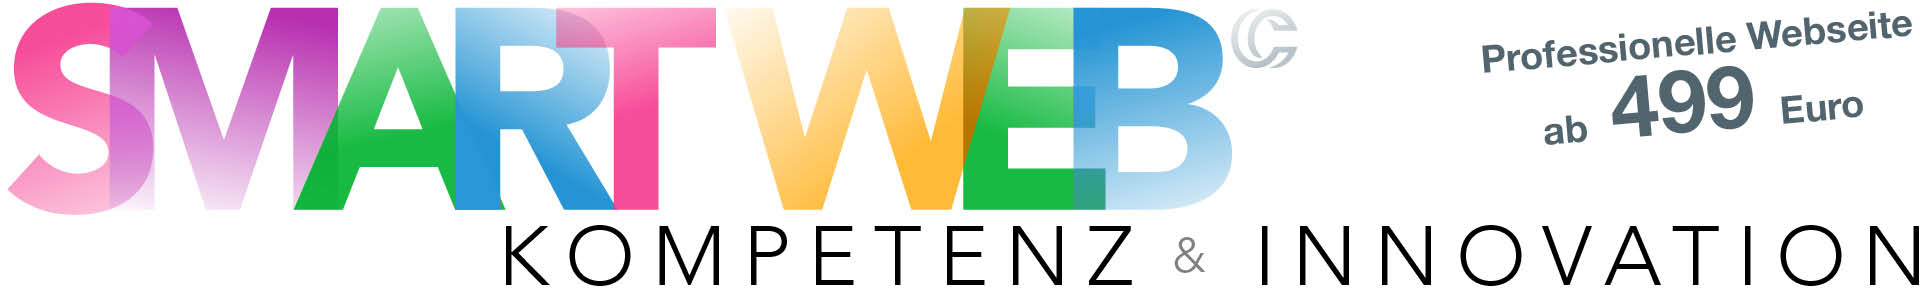 Internet und Webdesign von contour mediaservices in Regensburg. Professionelle Webseite ab 499 Euro.